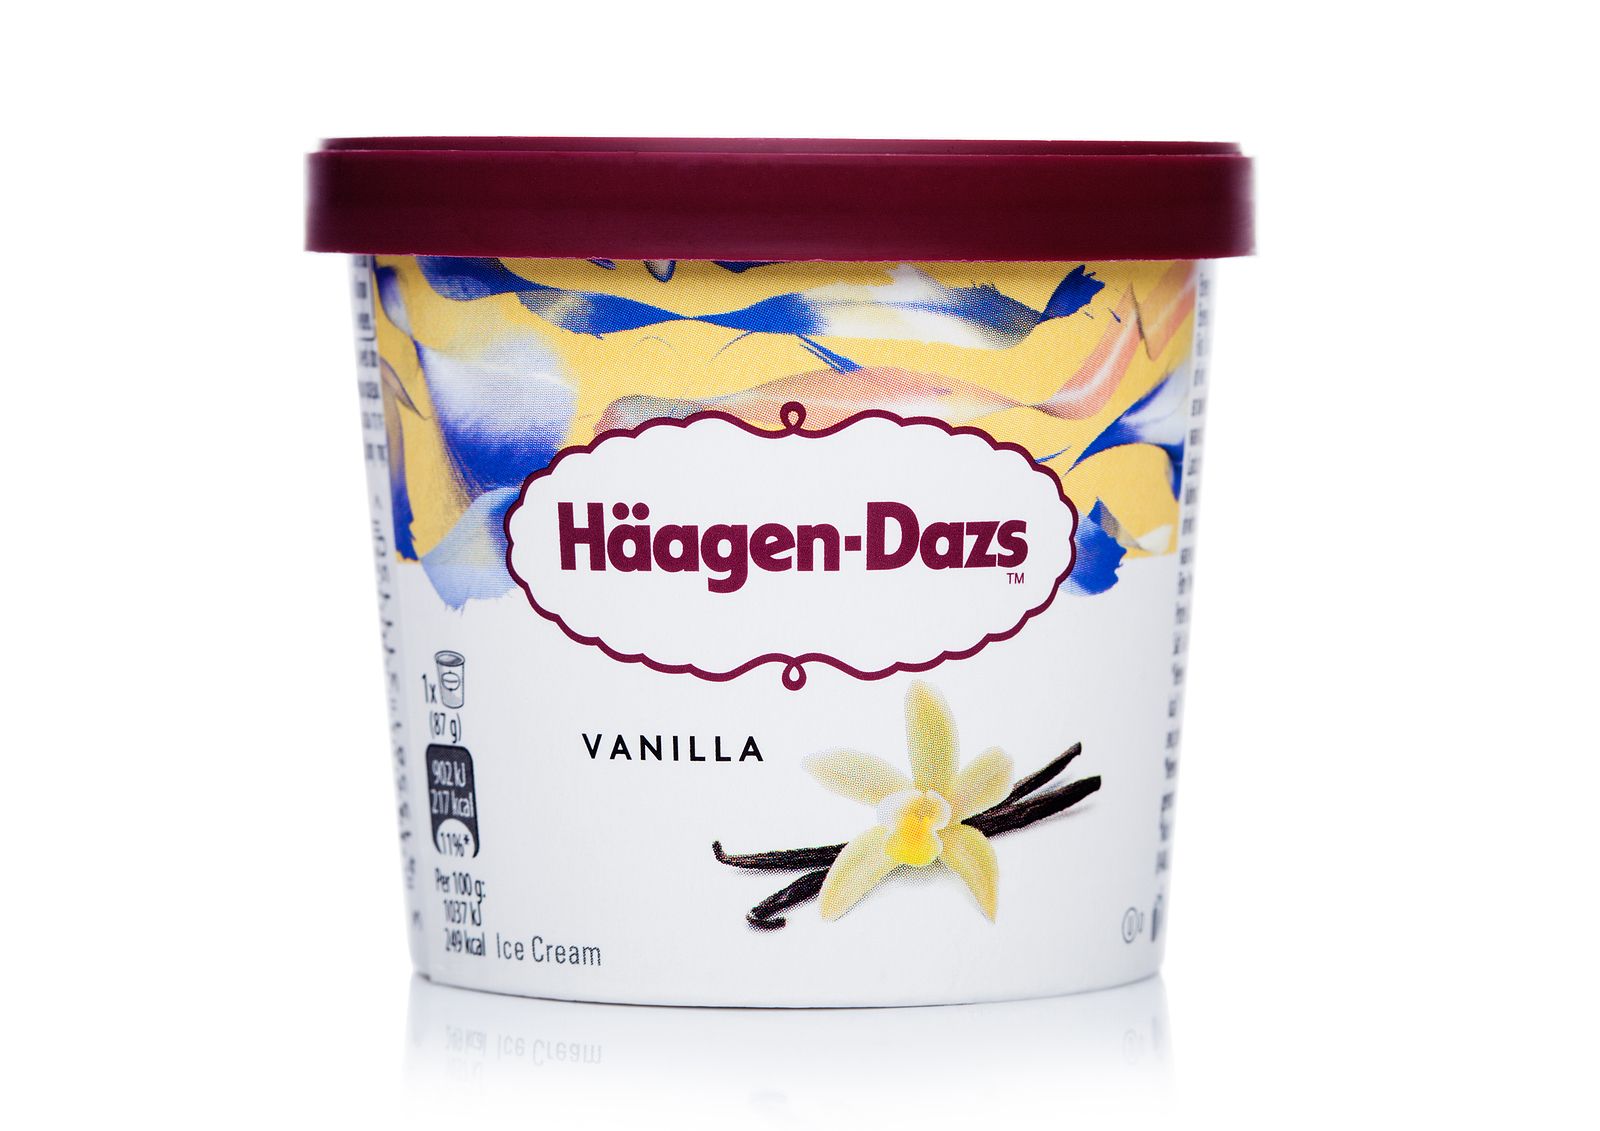 Alerta por óxido de etileno en helados Häagen-Dazs: lista de productos afectados